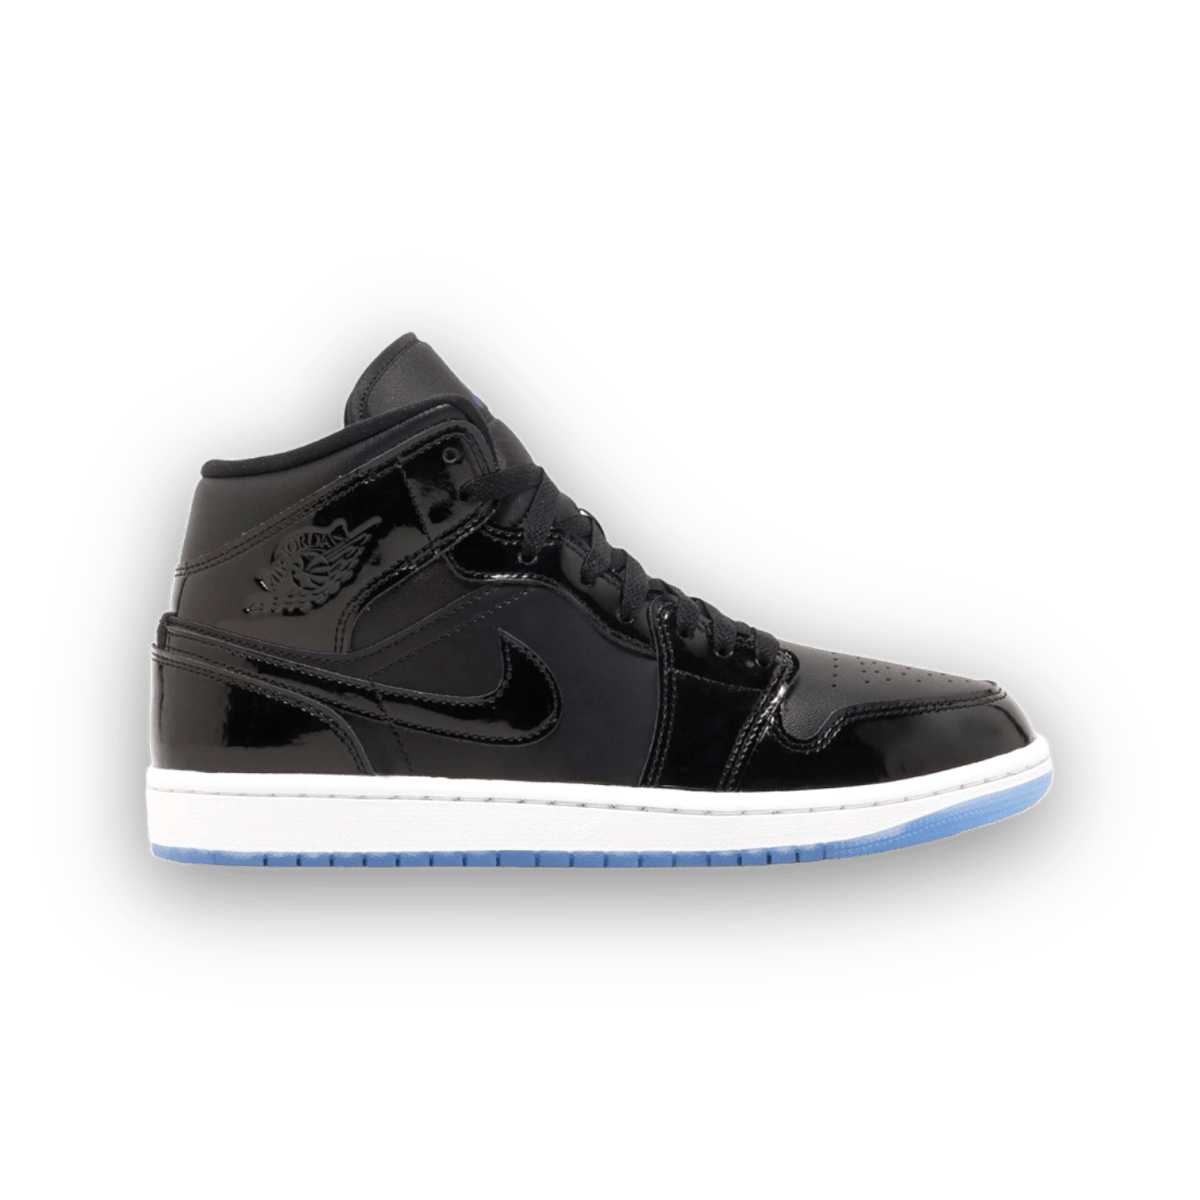 Jordan 1 Mid Space Jam - Grade School - High Sneaker - Jawns on Fire Sneakers & Streetwear